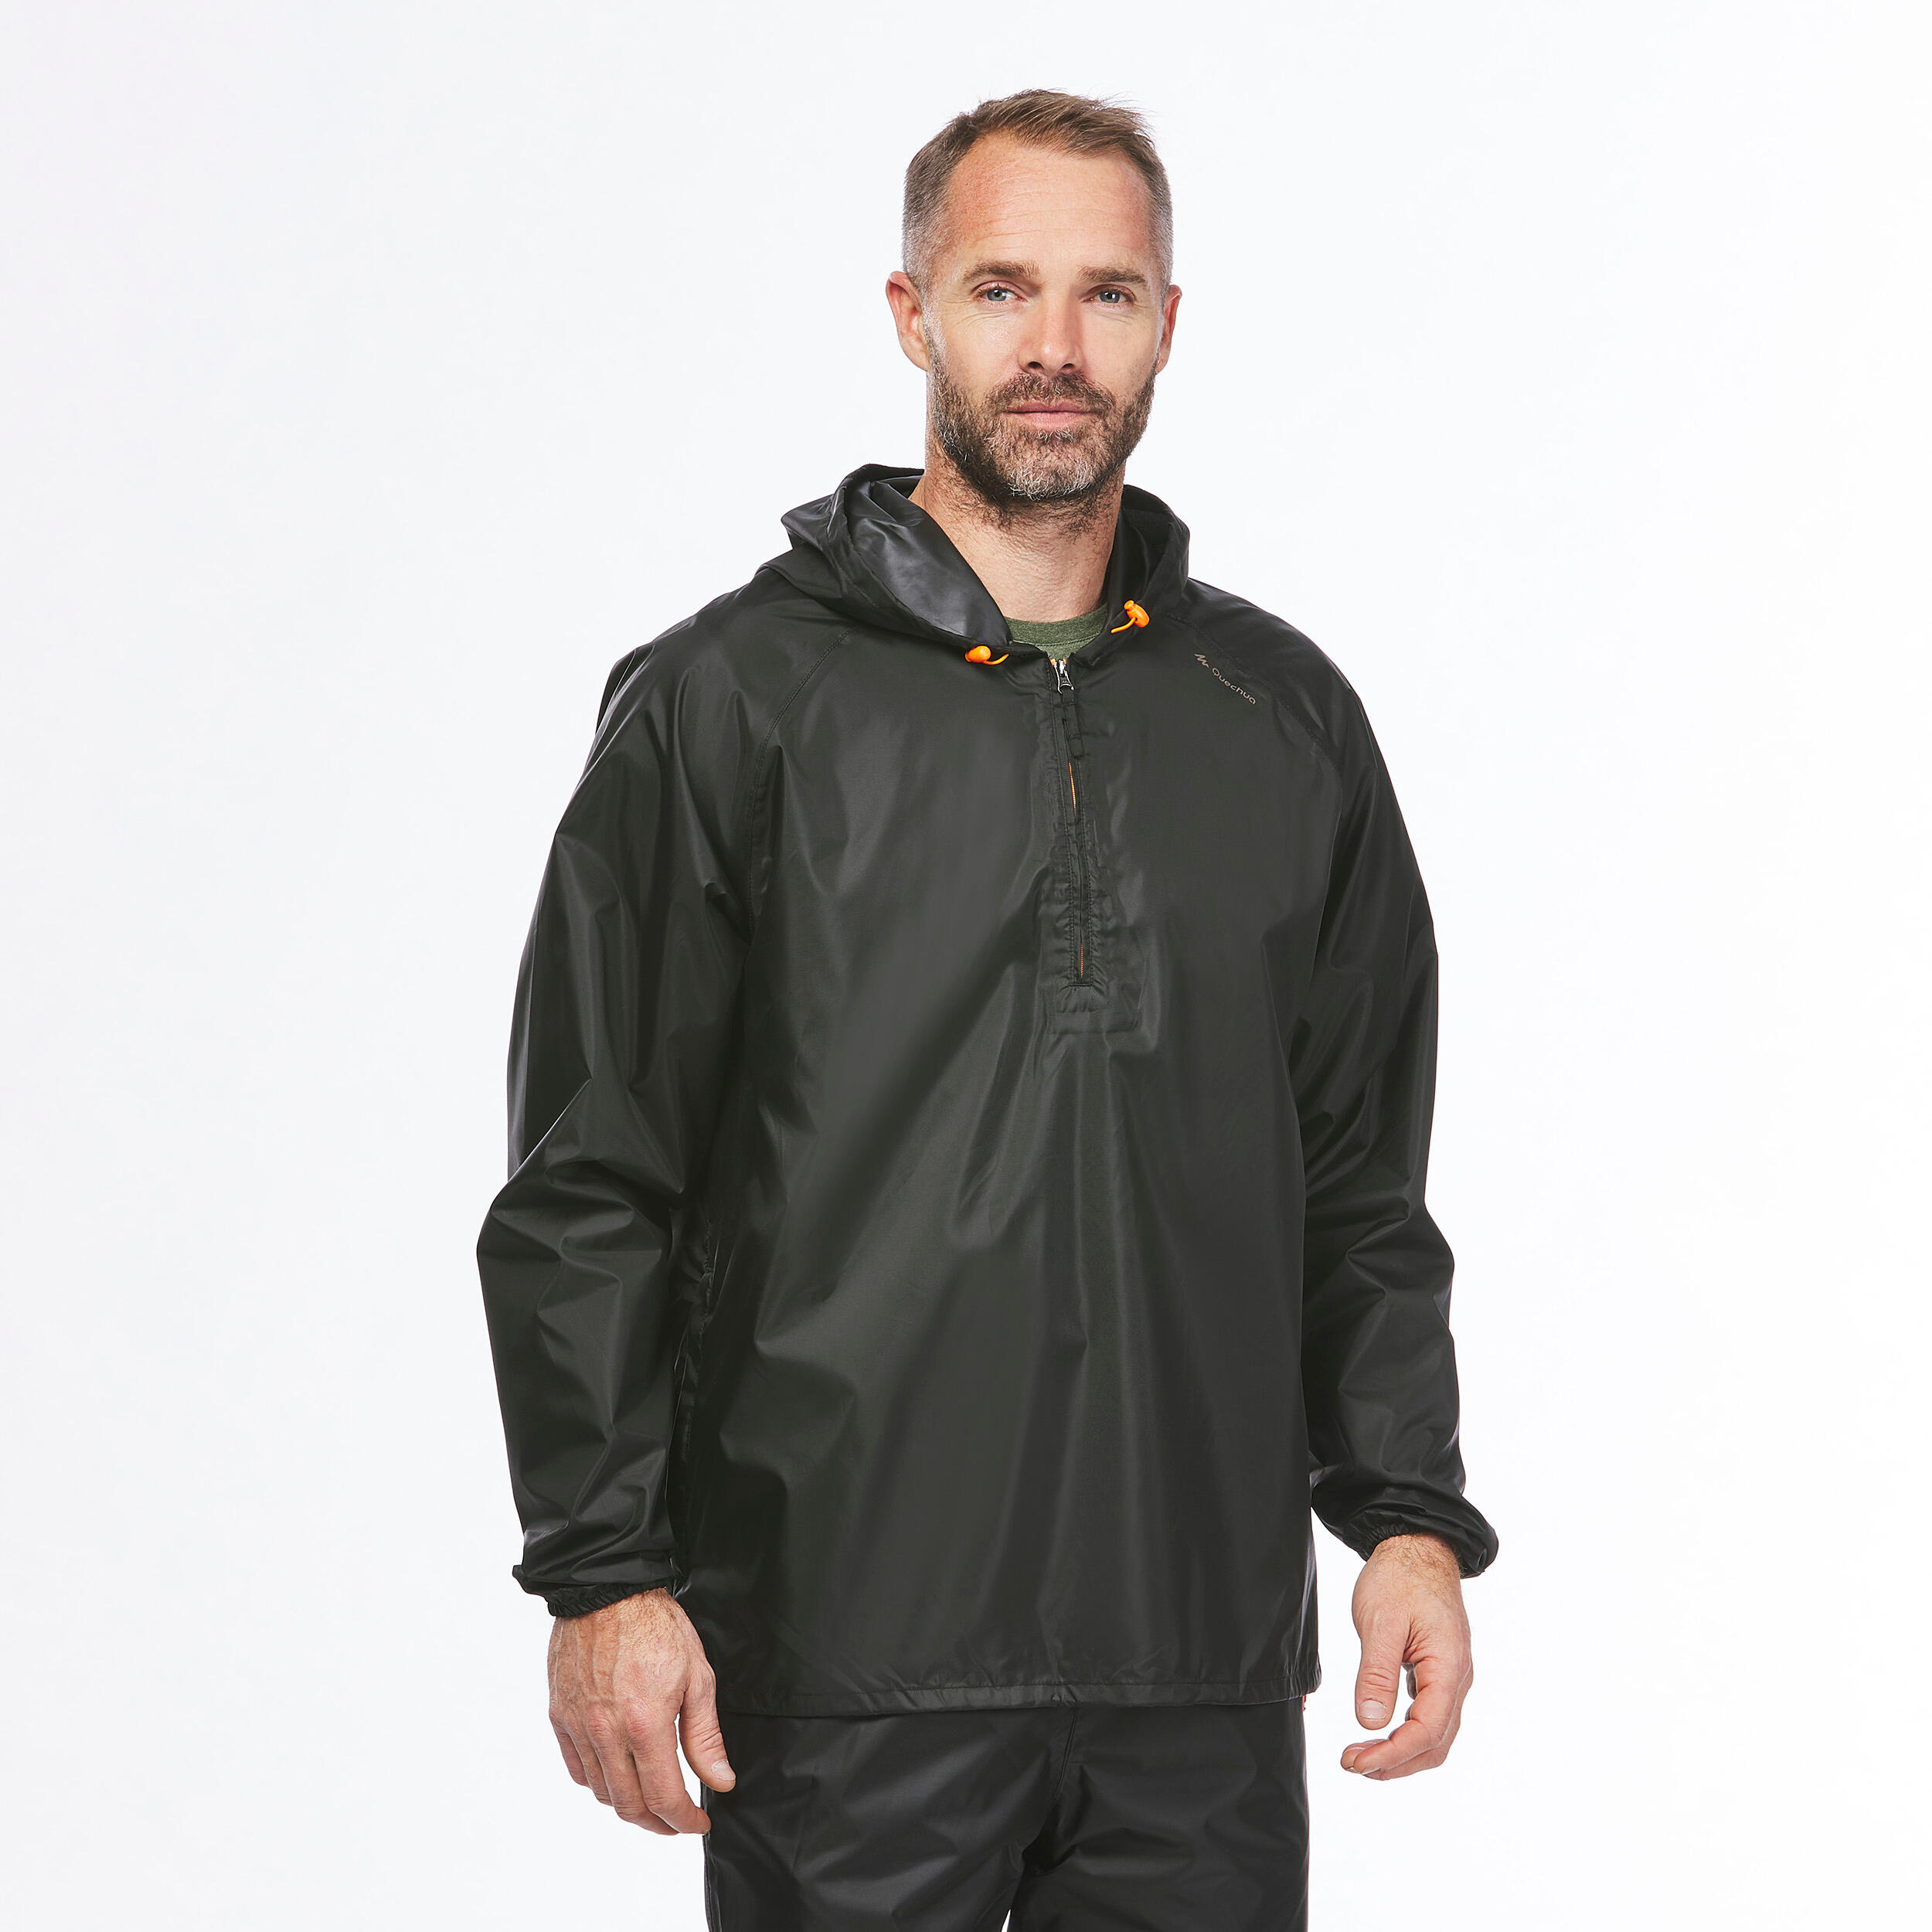 Men’s Waterproof Hiking Jacket - Raincut - QUECHUA